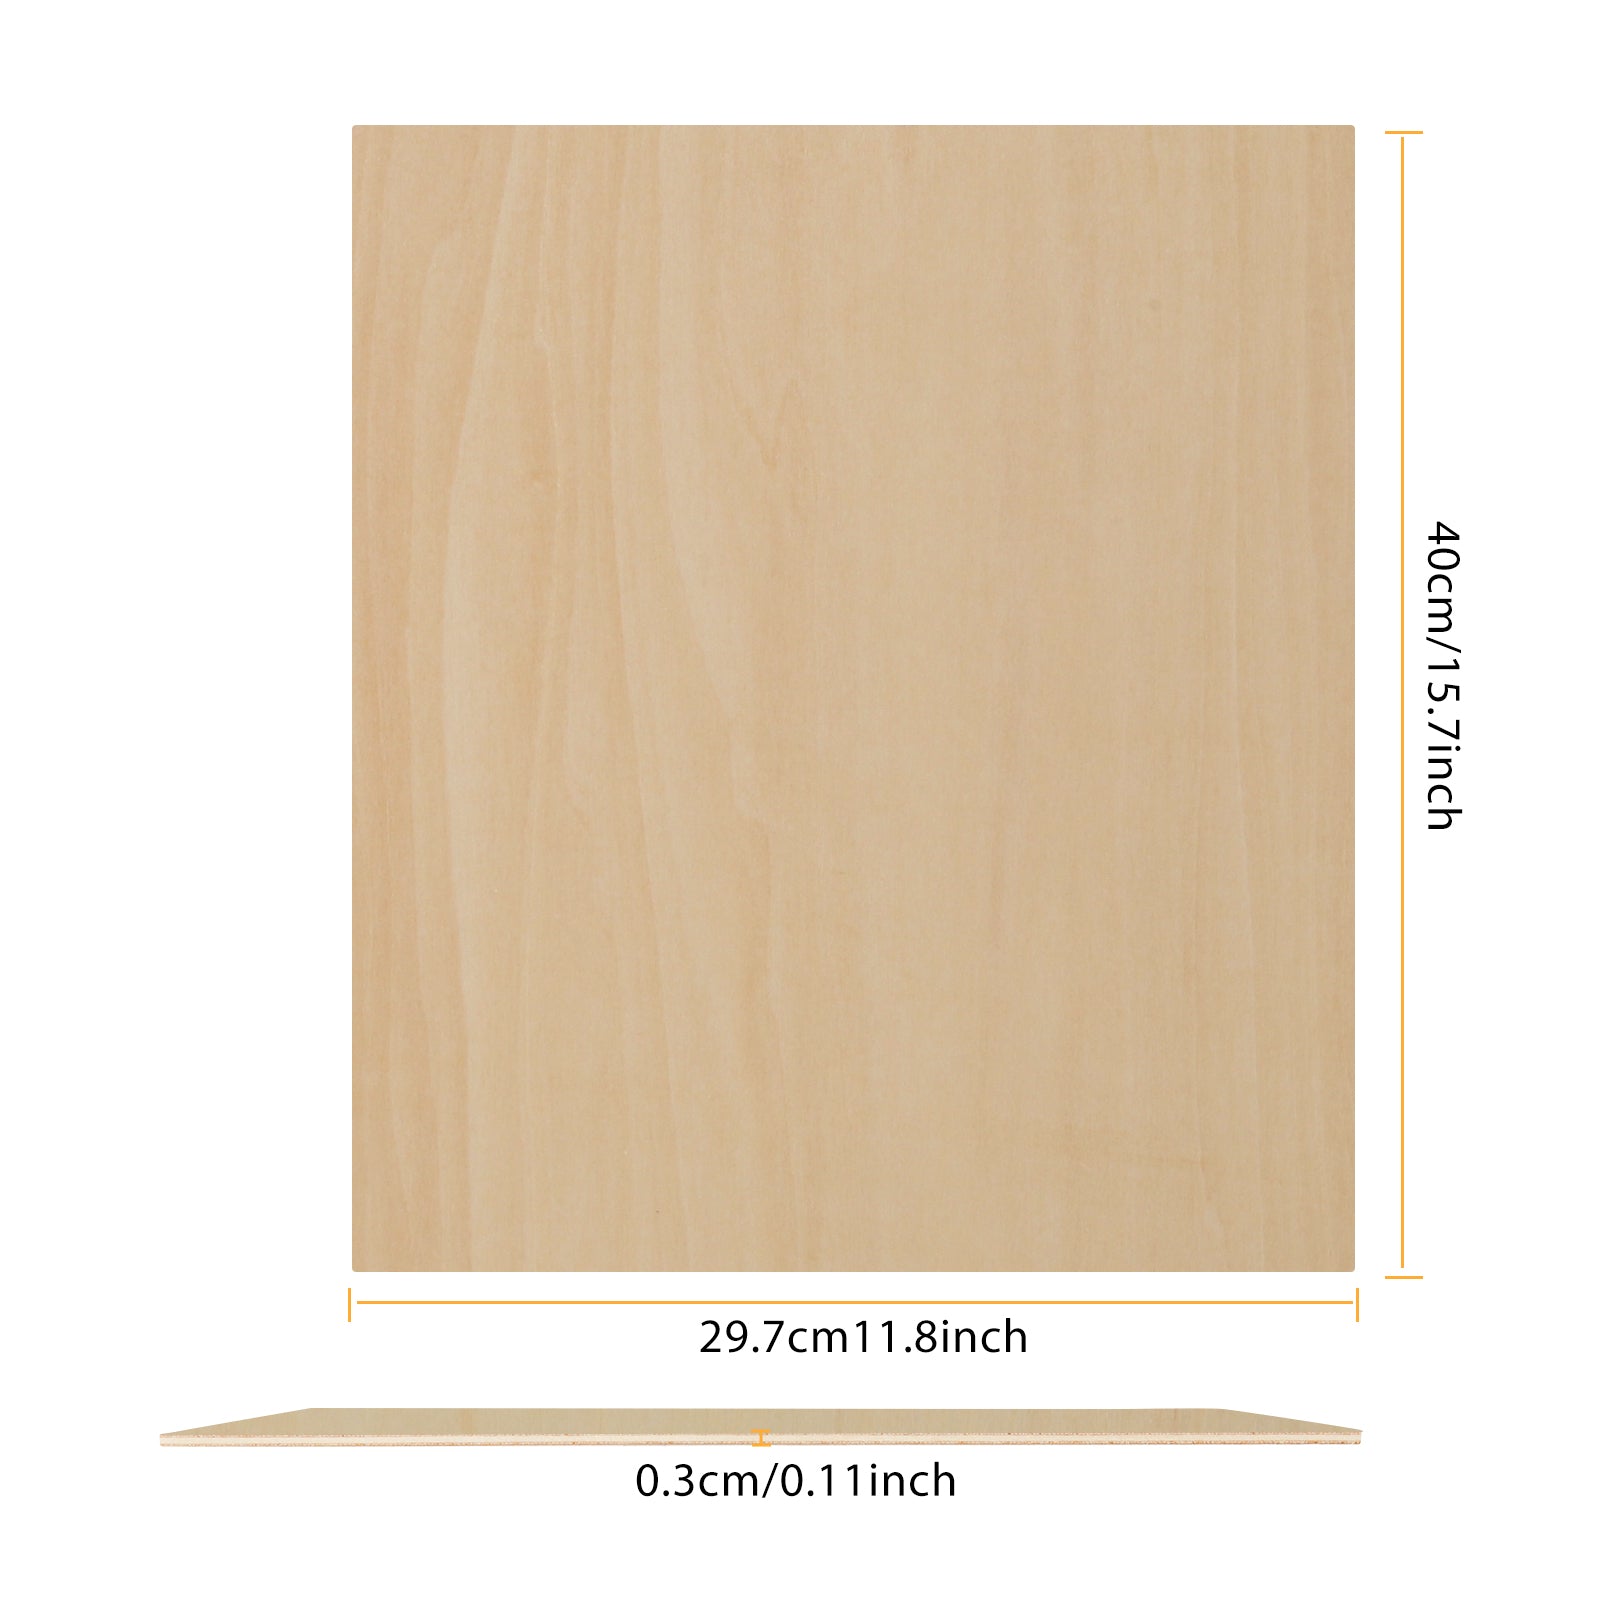 10 Stück A3-Sperrholzplatten, 3 mm Dicke (+/- 0,2 mm), Lindenholz-Sperrholz, 29,7 x 42 x 0,3 cm, zum Gravieren